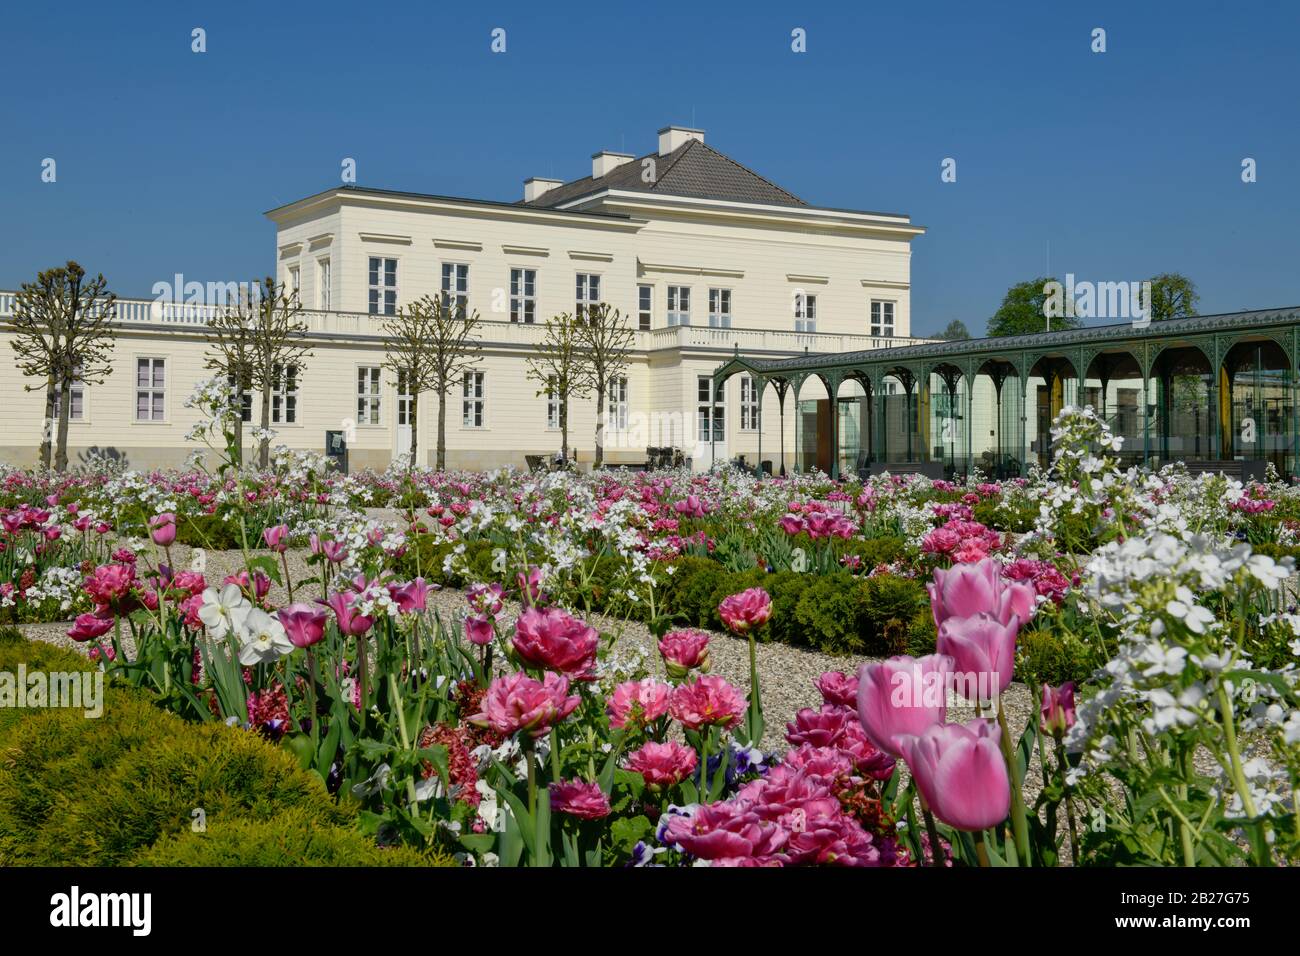 Tulpenbeete, Schloß, Großer Garten, Herrenhäuser Gärten, Hanovre, Niedersachsen, Allemagne Banque D'Images